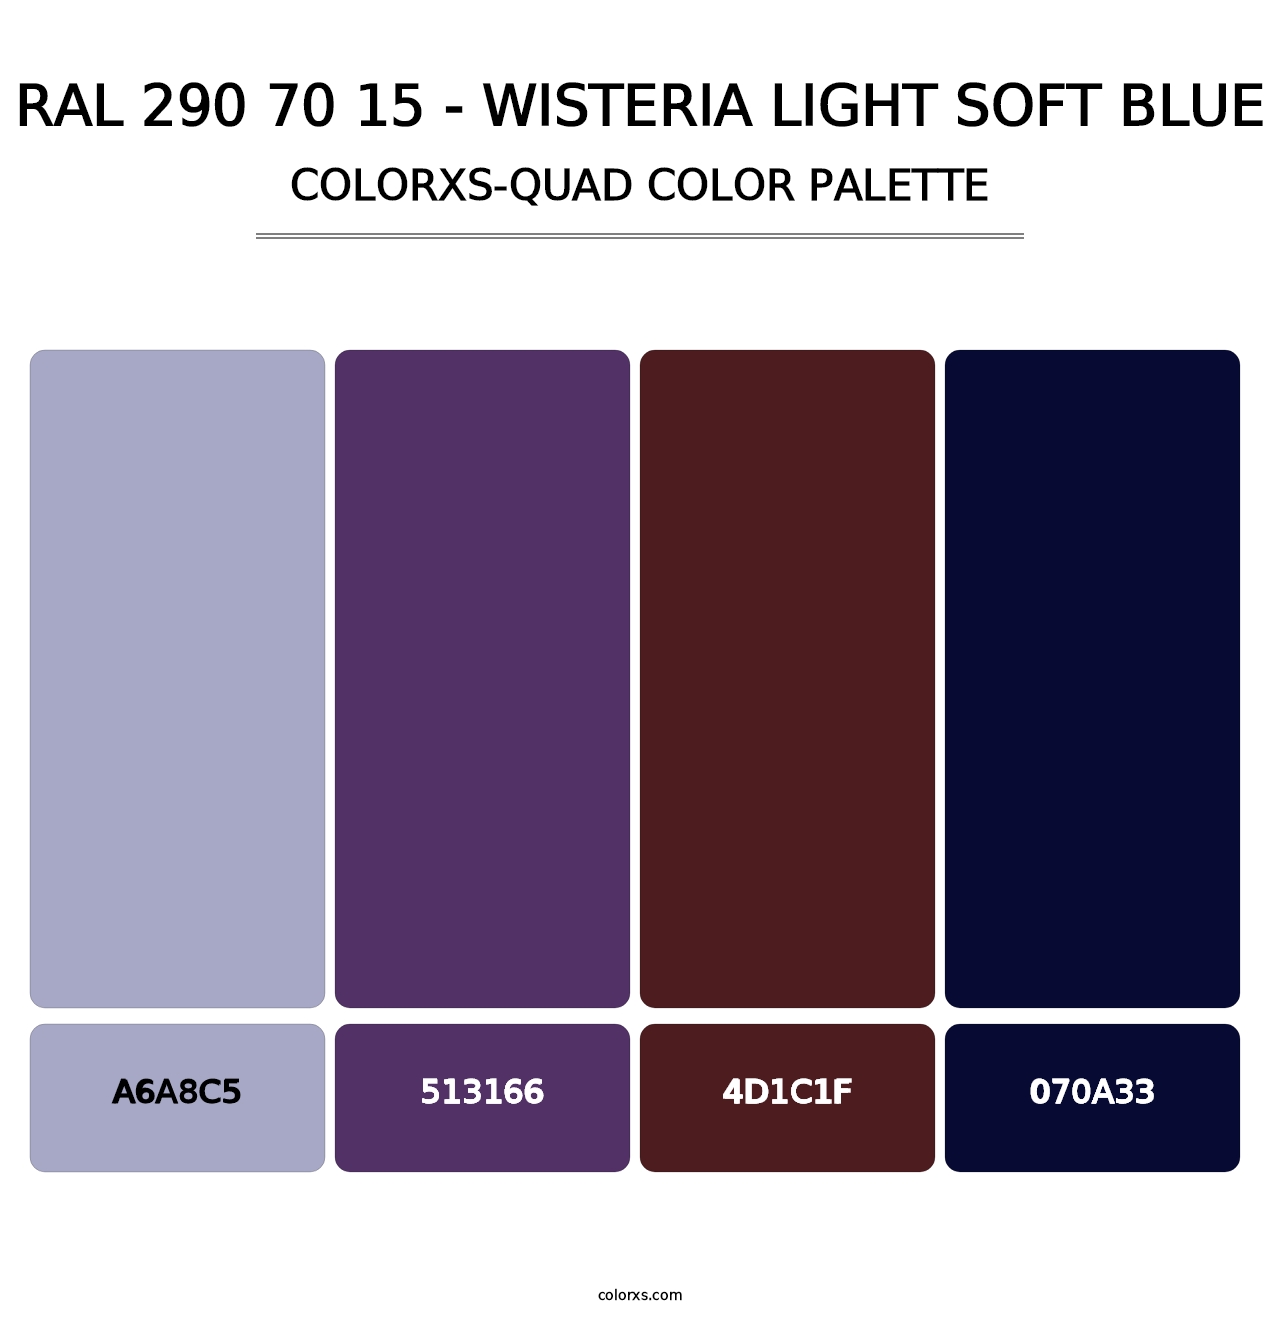 RAL 290 70 15 - Wisteria Light Soft Blue - Colorxs Quad Palette